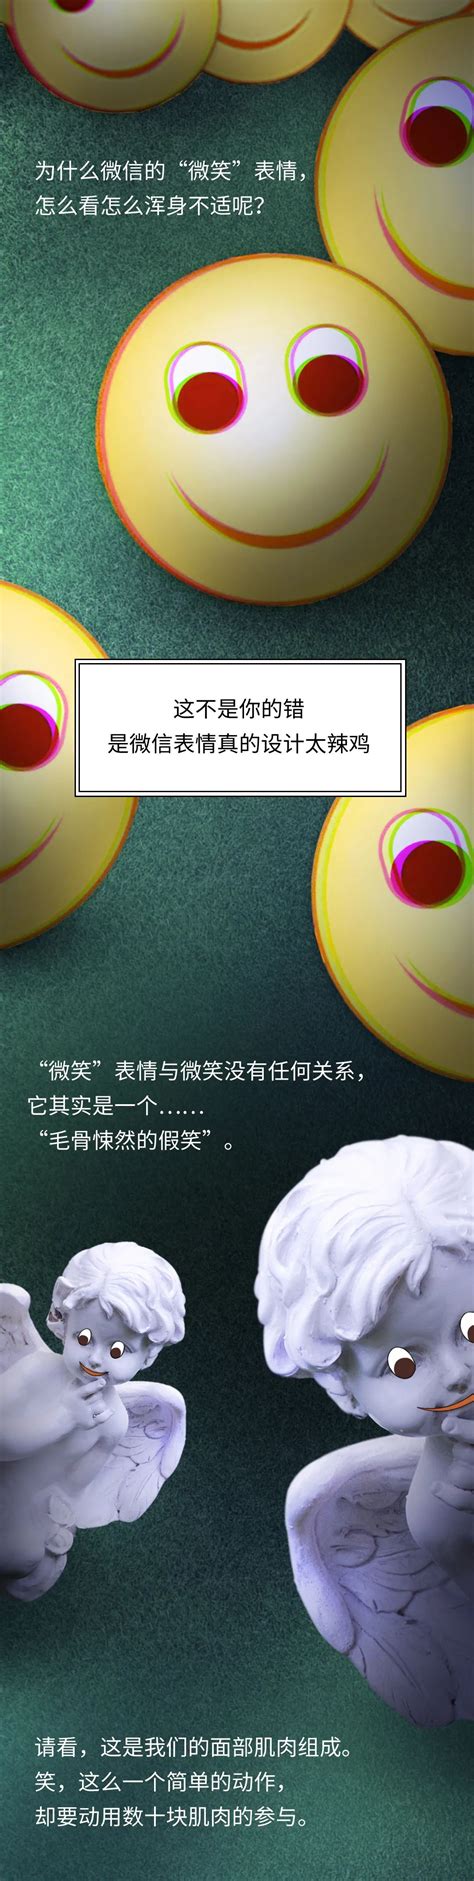 卡通微笑表情-快图网-免费PNG图片免抠PNG高清背景素材库kuaipng.com